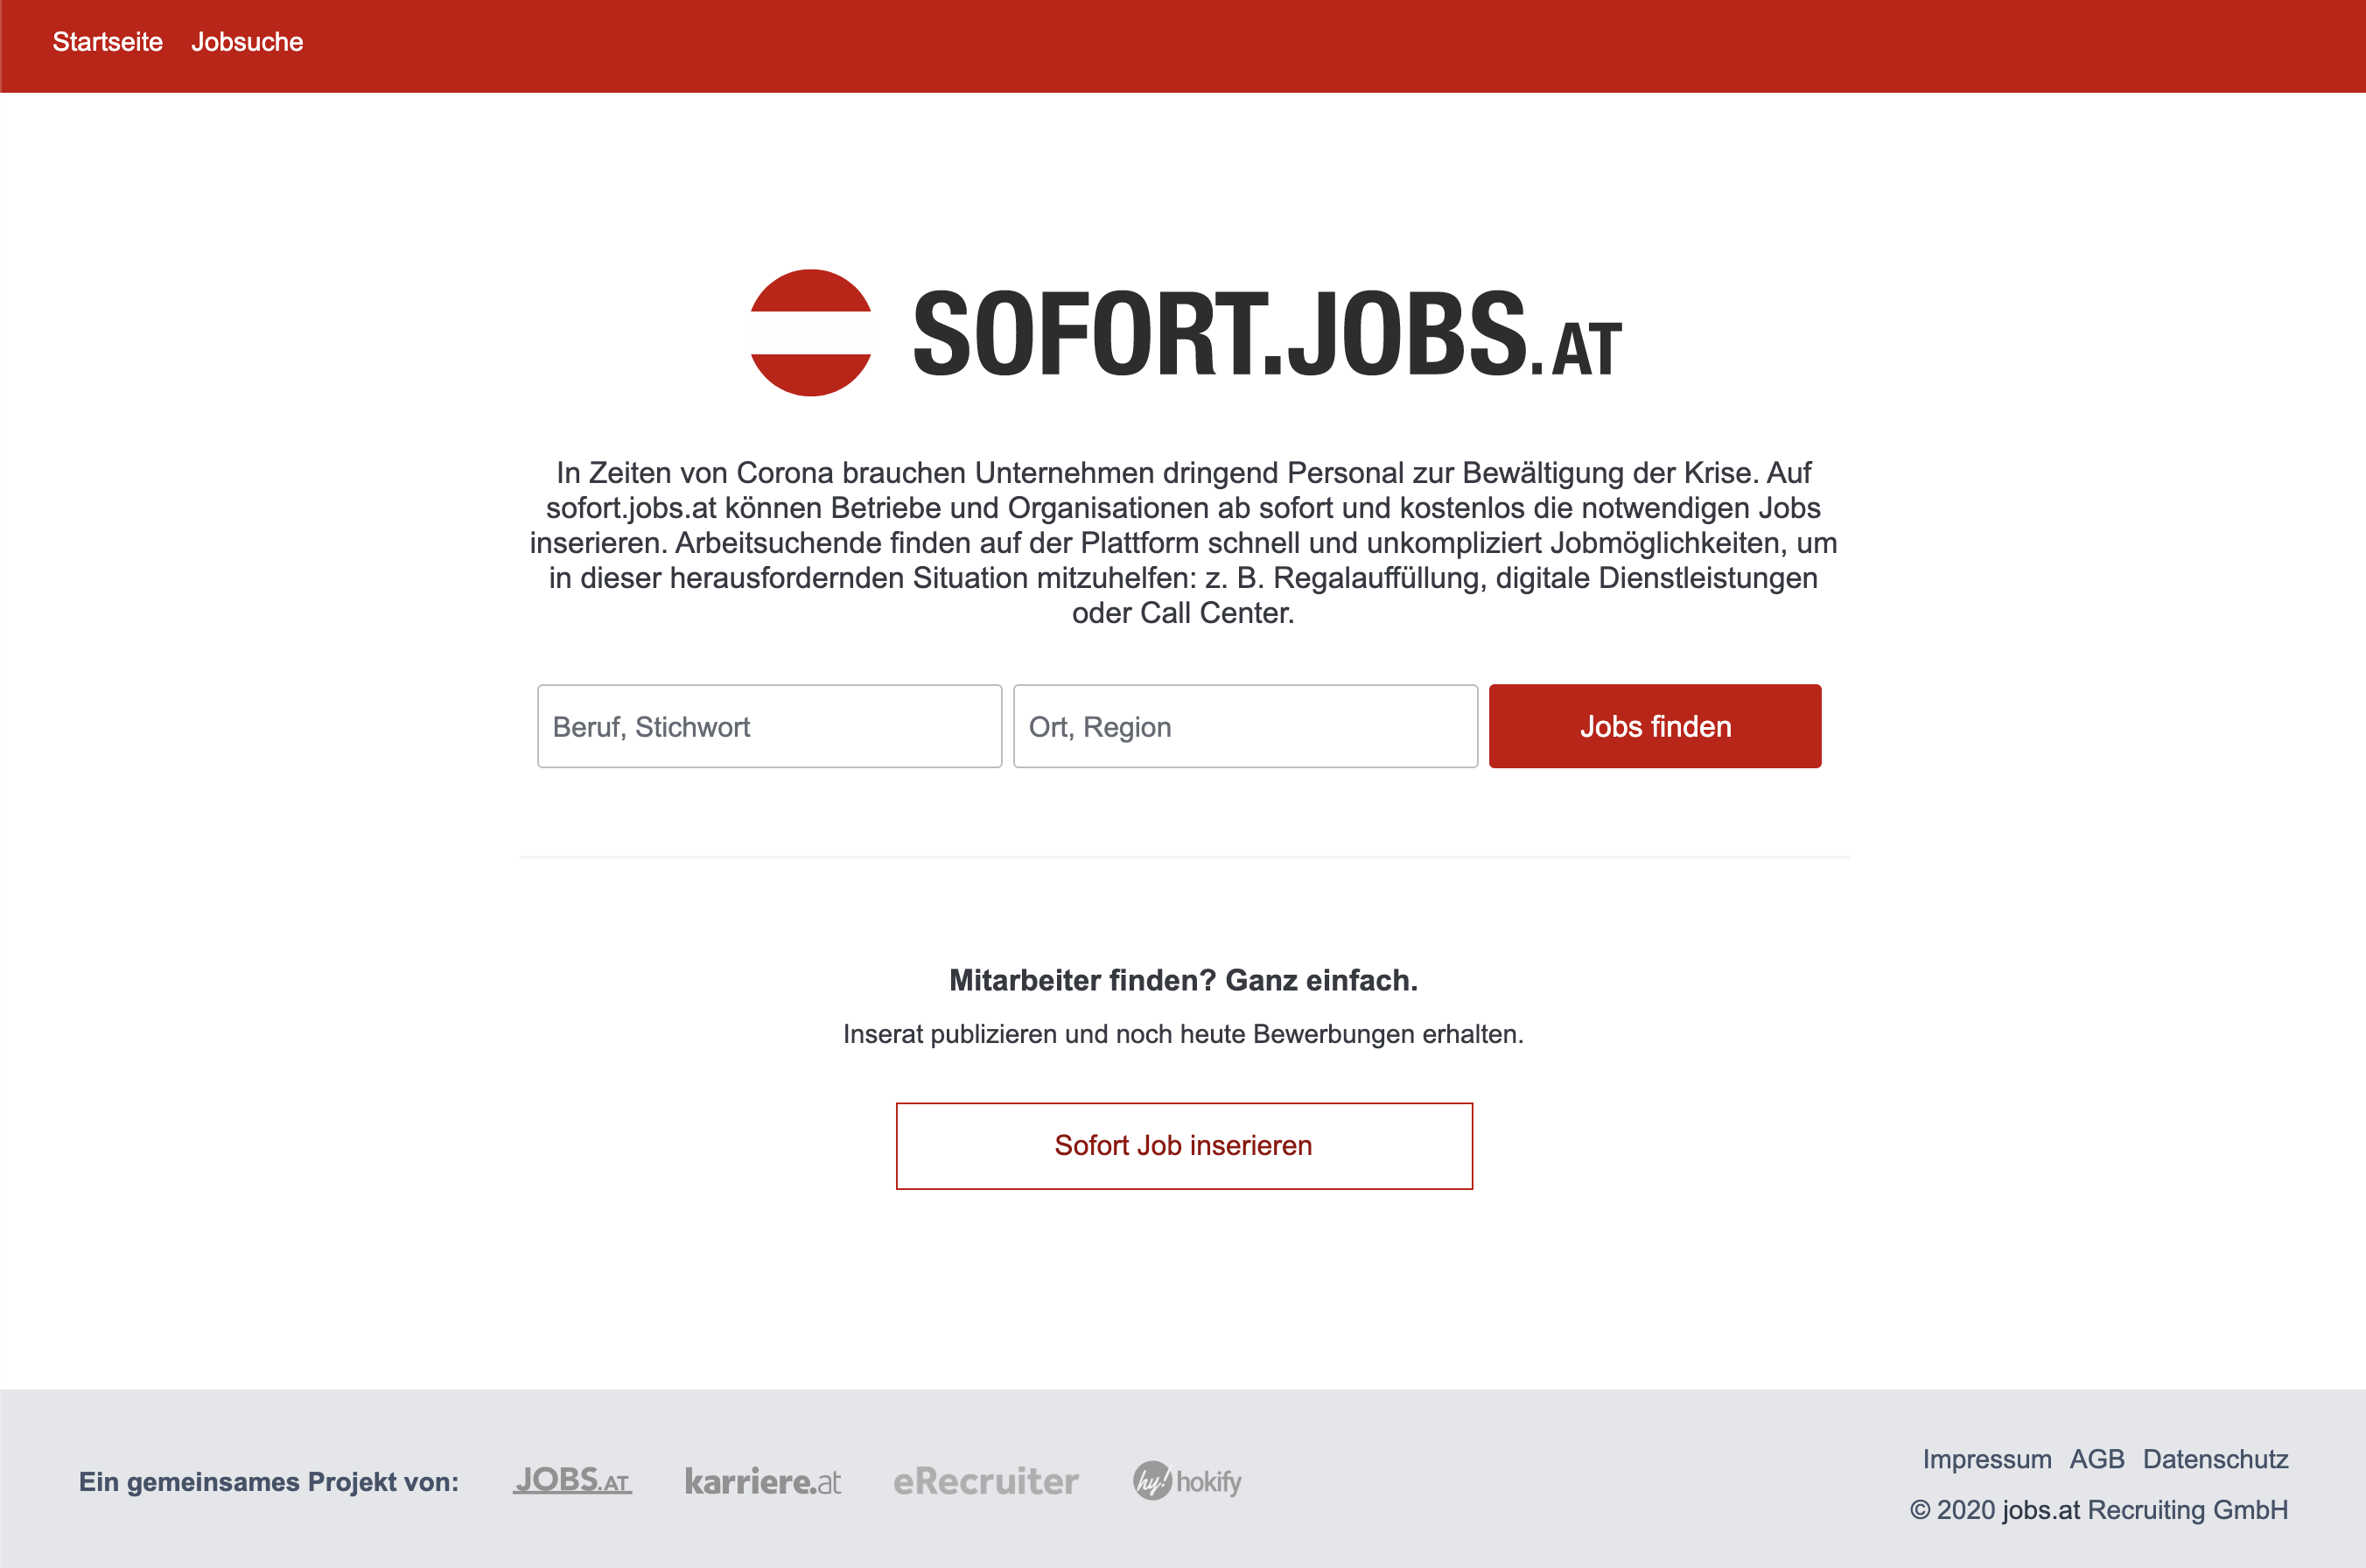 Sofort jobs at